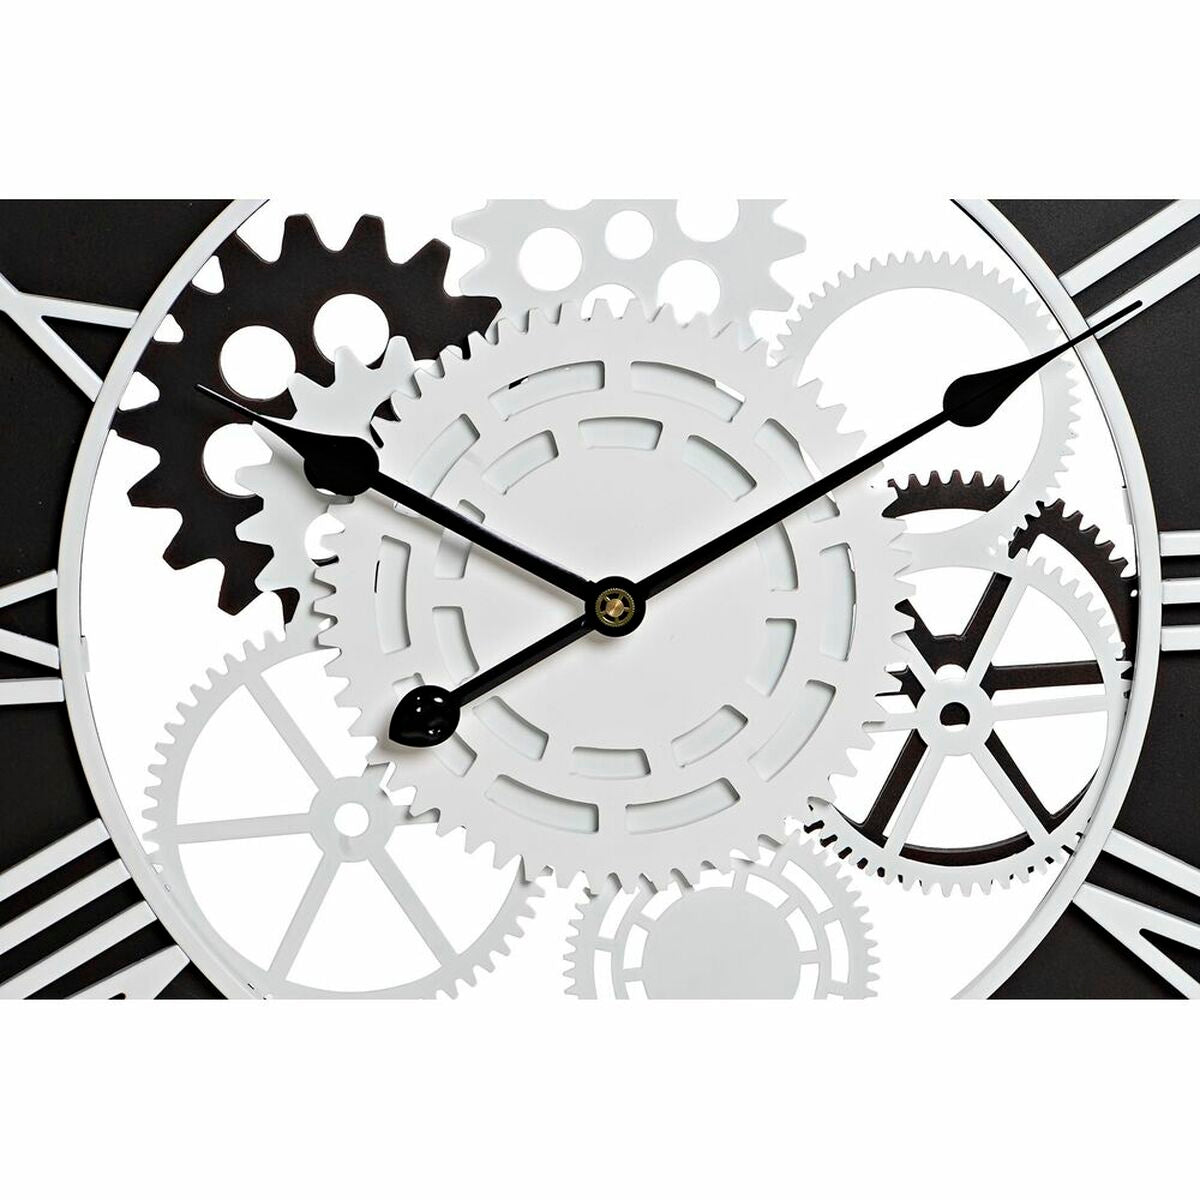 Reloj de Pared Diseño Industrial Loft Home Decor Madera Negro Blanco Hierro Engranaje (60 x 4 x 60 cm)